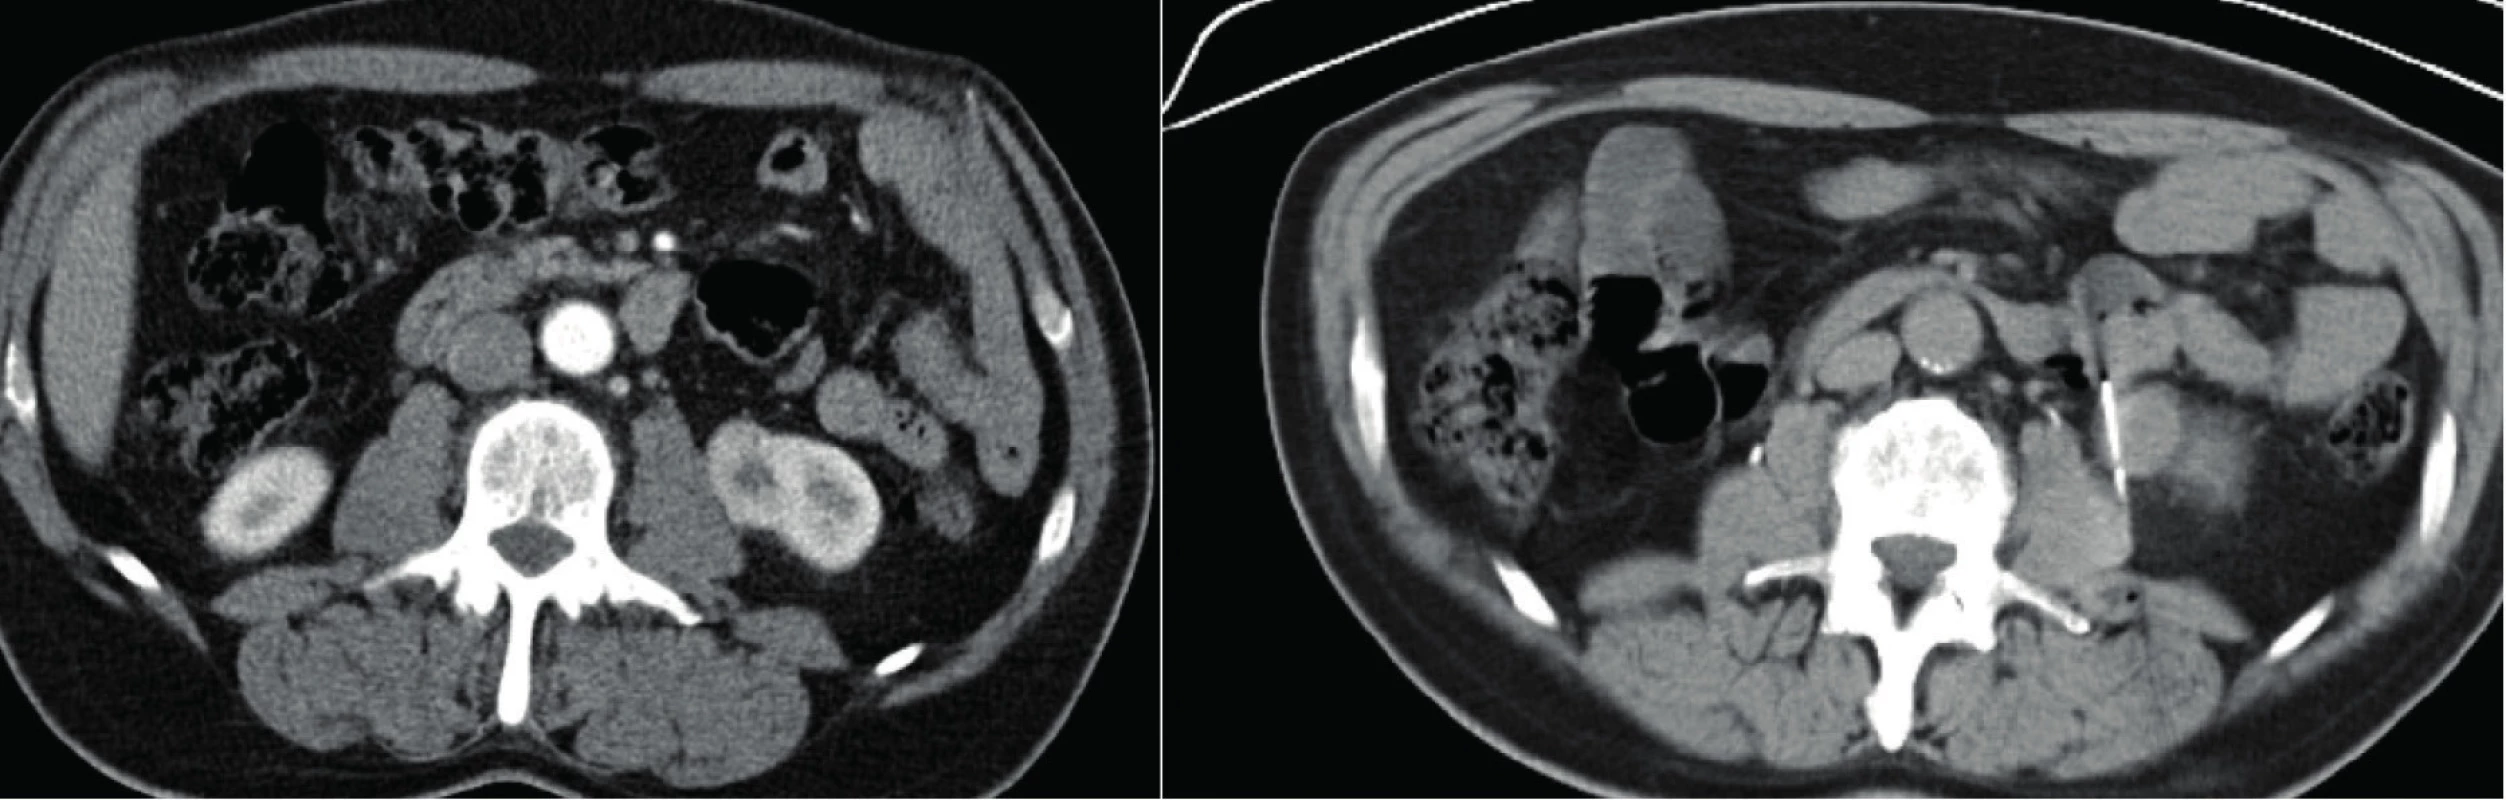 CT, transverzální řez. Muž, 50 let. Vlevo CT snímek před biopsií s popisem tumoru levé ledviny, suspektní
onkocytom. Vpravo snímek během biopsie. Histologicky potvrzený onkocytom<br>
Fig. 4. CT scan, transverse plane. A fifty year old male. In the left picture – CT scan prior to the biopsy with the
description of the tumor of the left kidney, oncocytoma suspected. In the right picture – CT scan during the biopsy.
Histologically confirmed oncocytoma